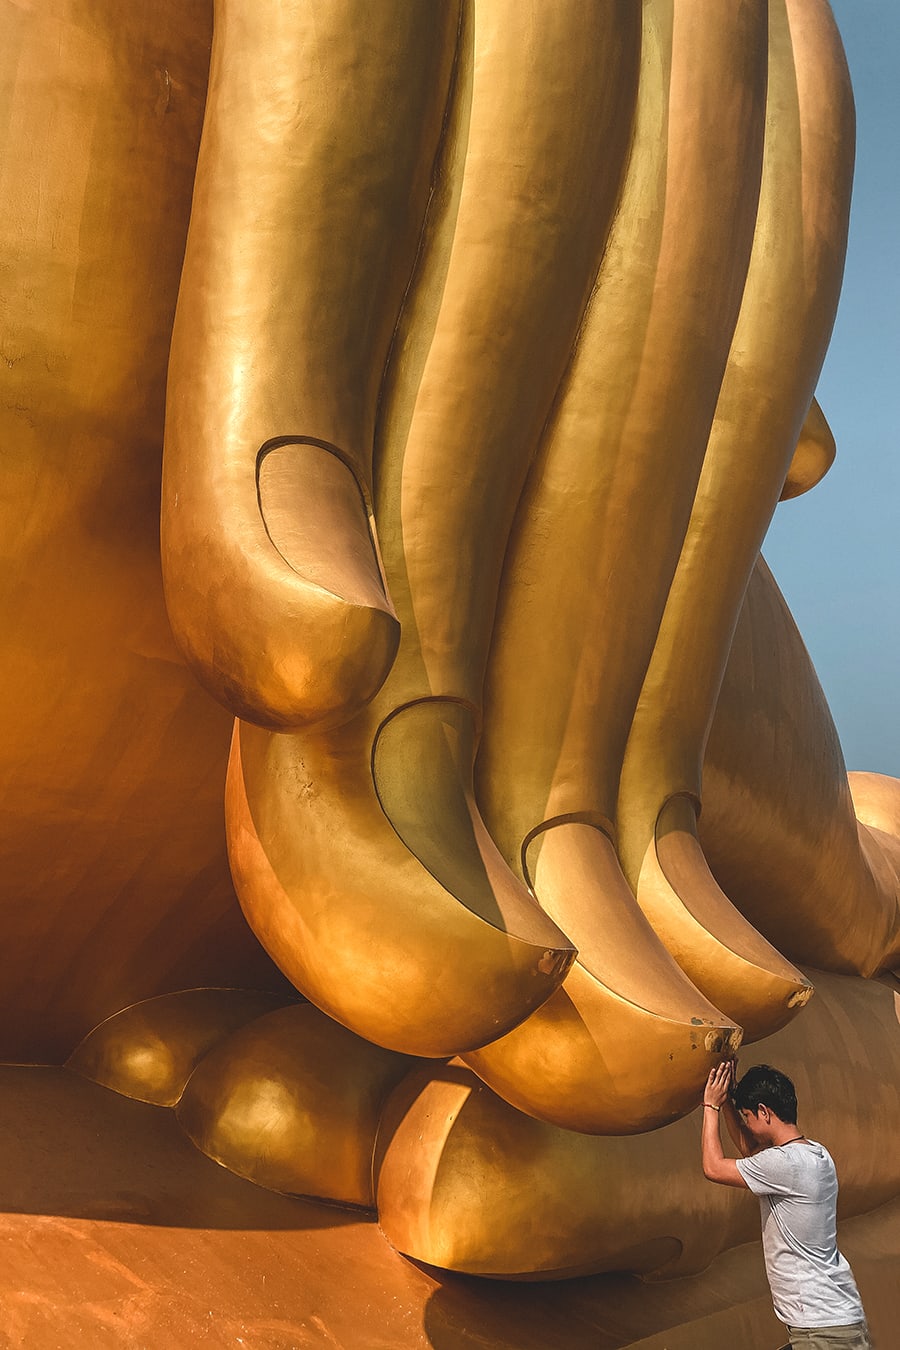 The Big Buddha of Ang Thong, Thailand.